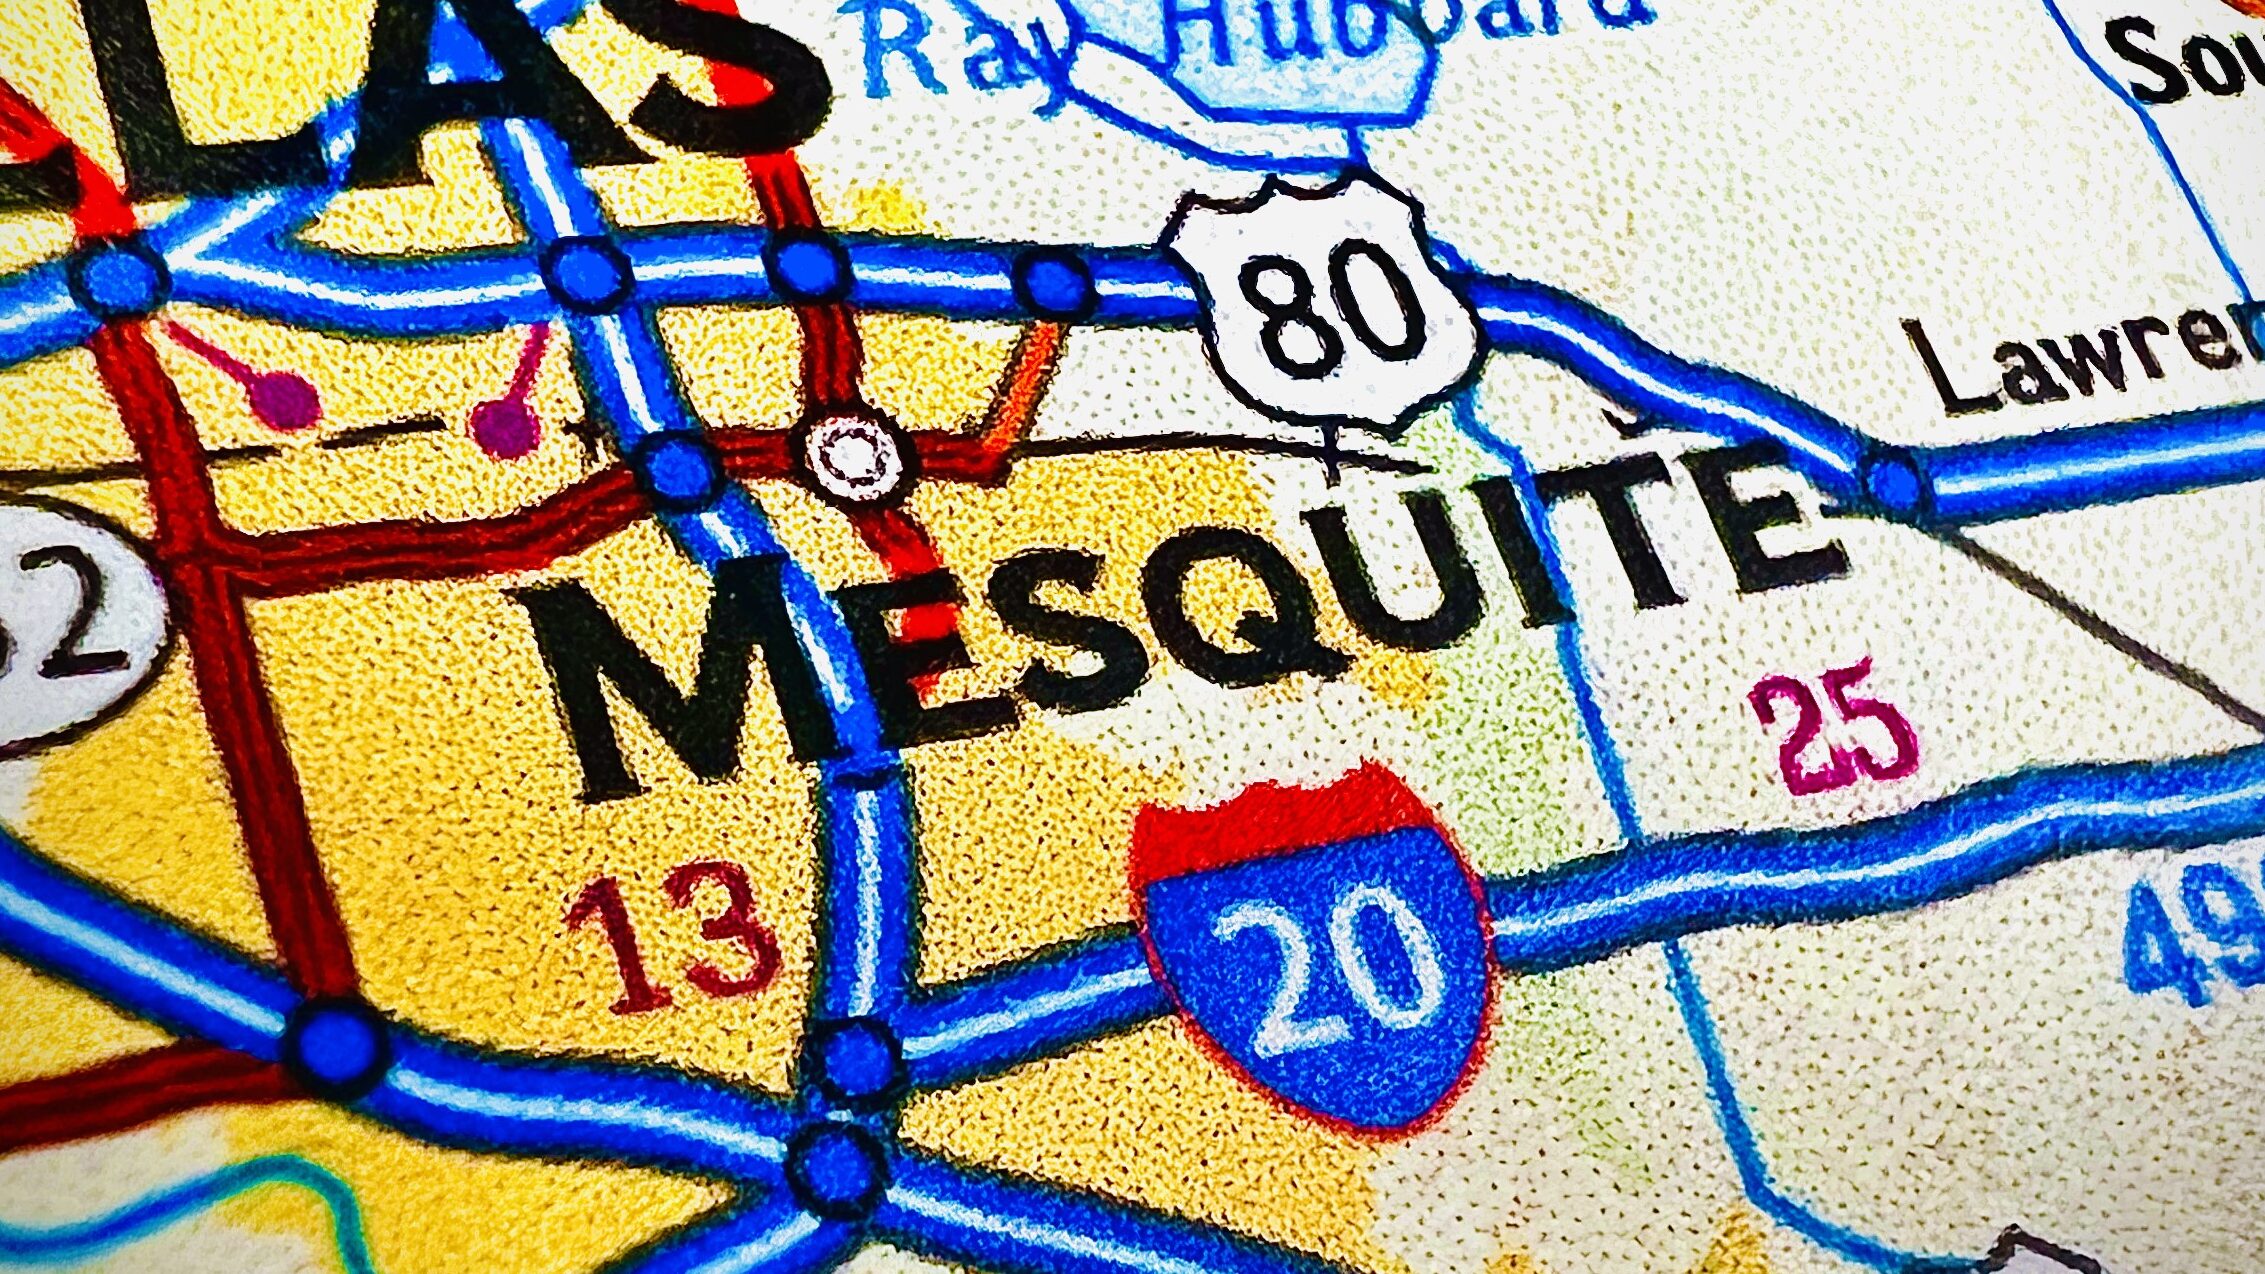 Mesquite, TX dangerous intersections